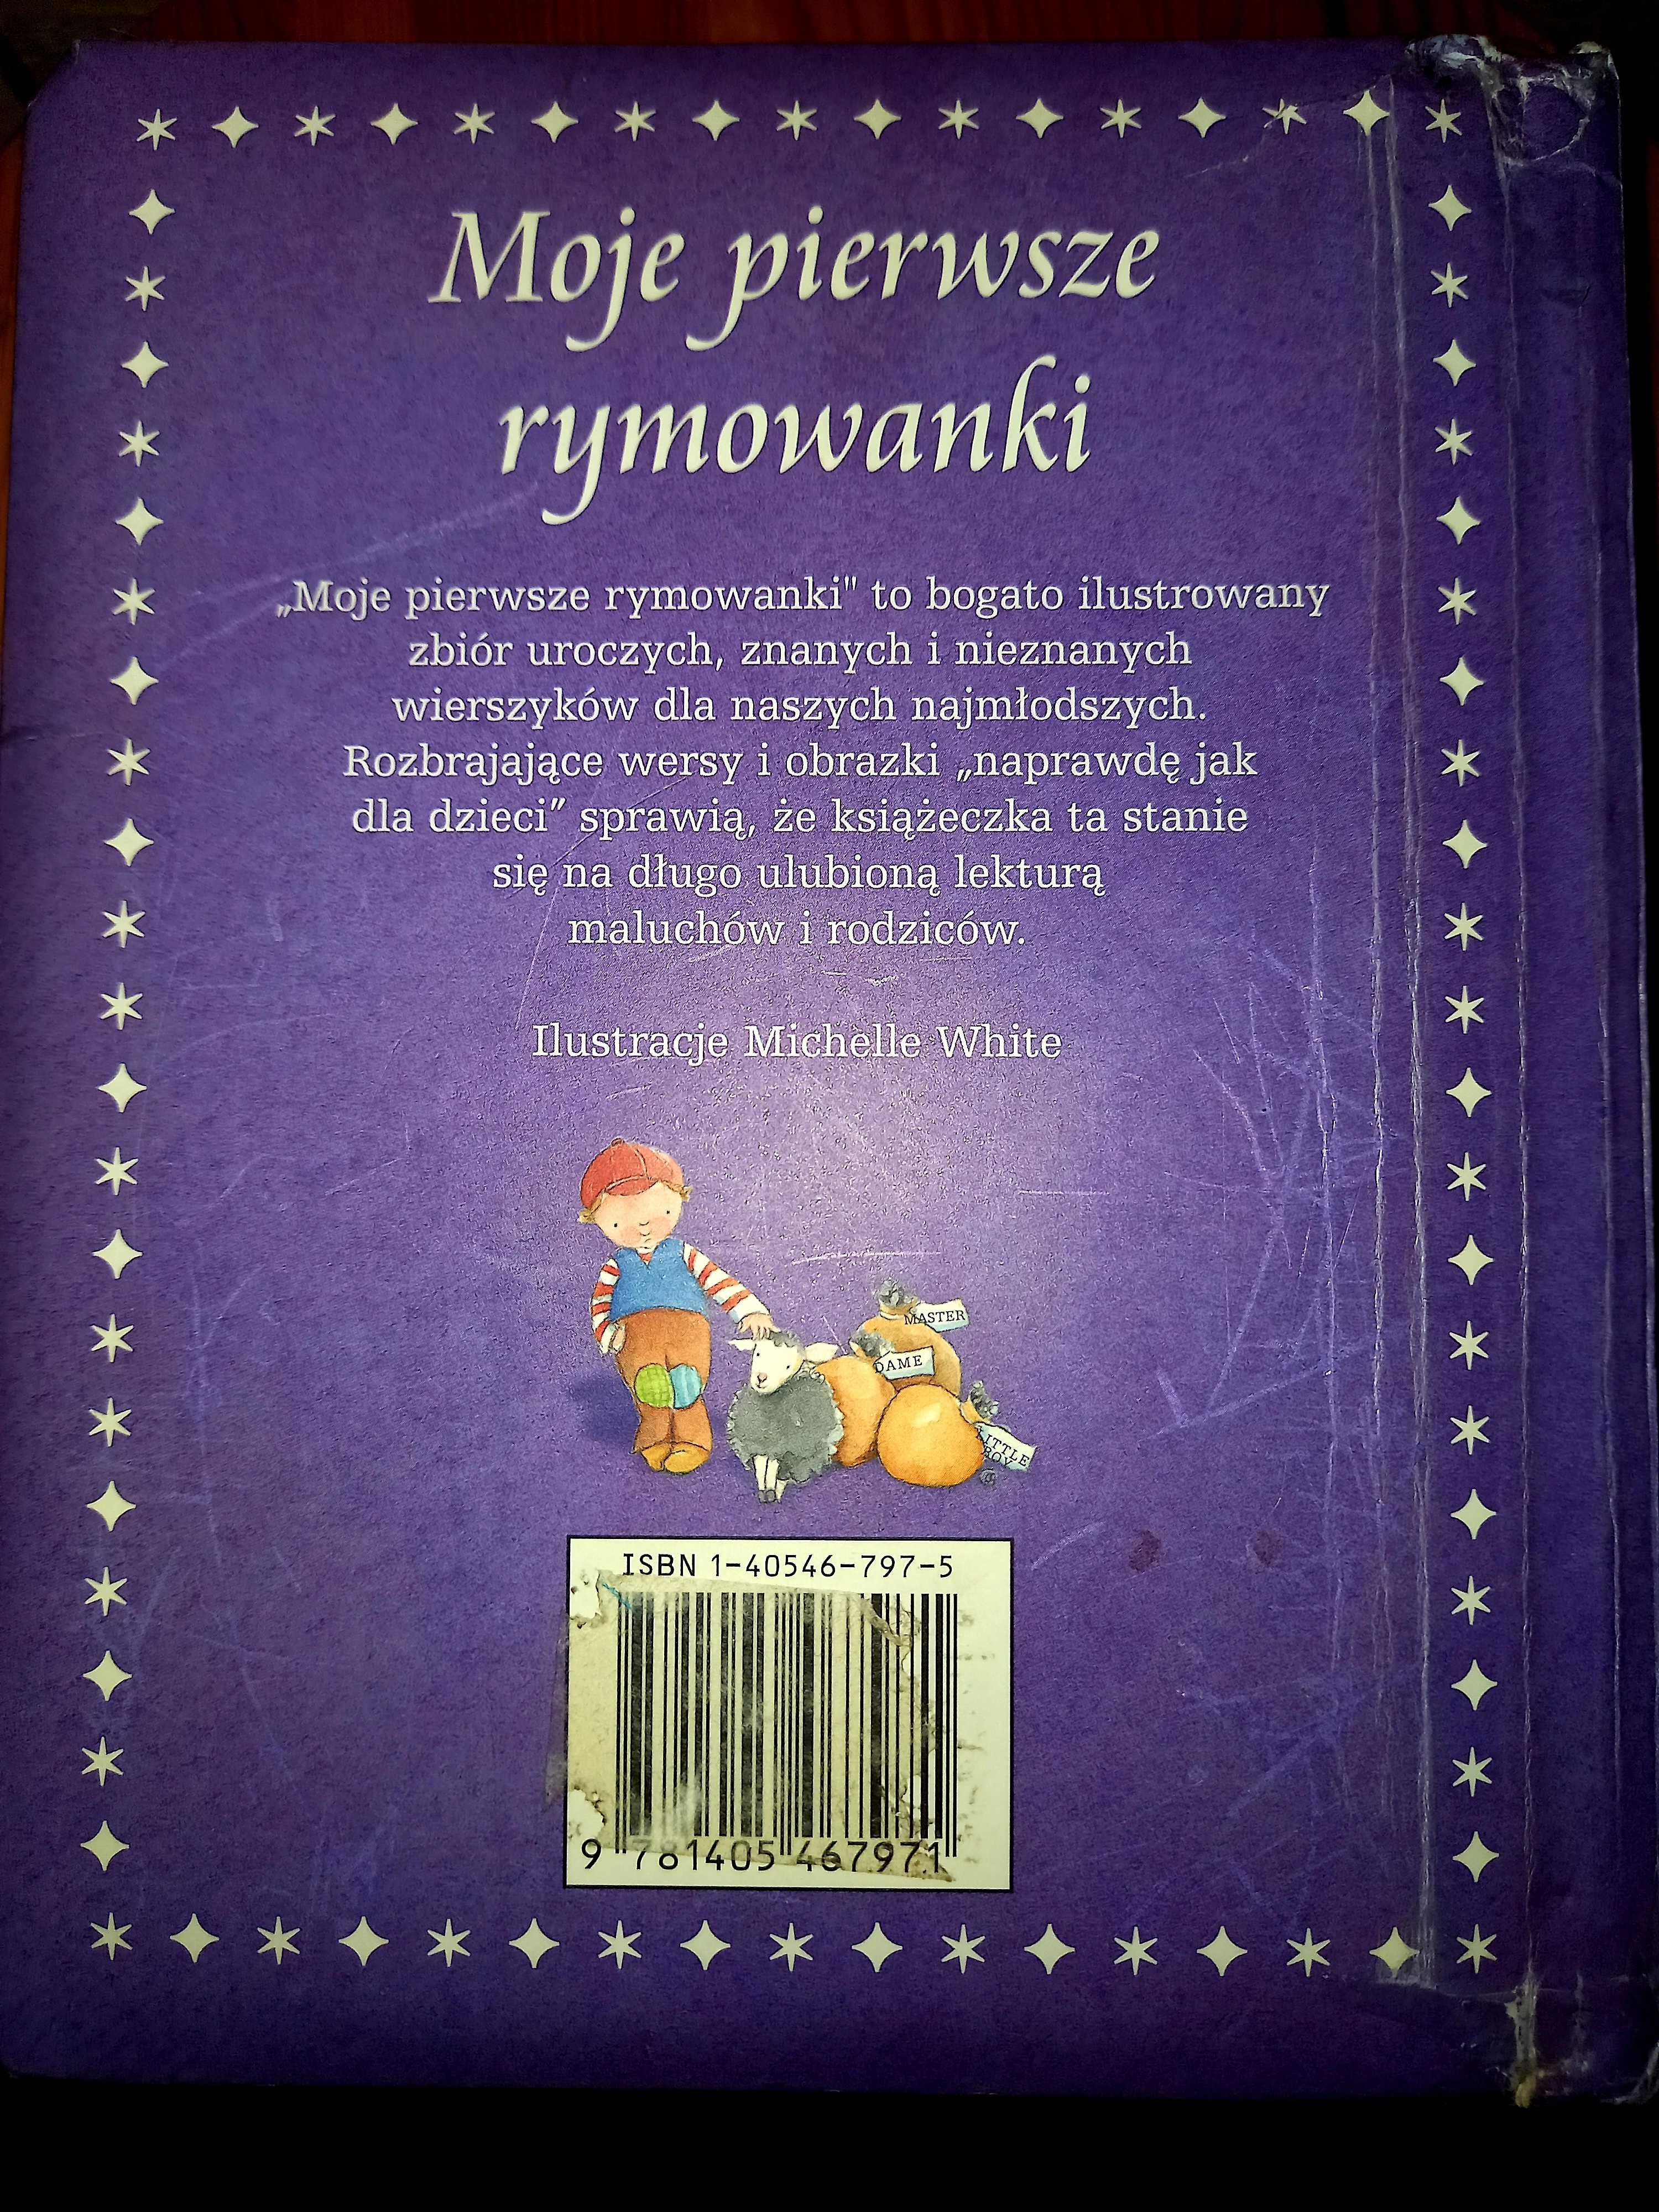 Książka dla dzieci "Moje pierwsze rymowanki- grube kartki